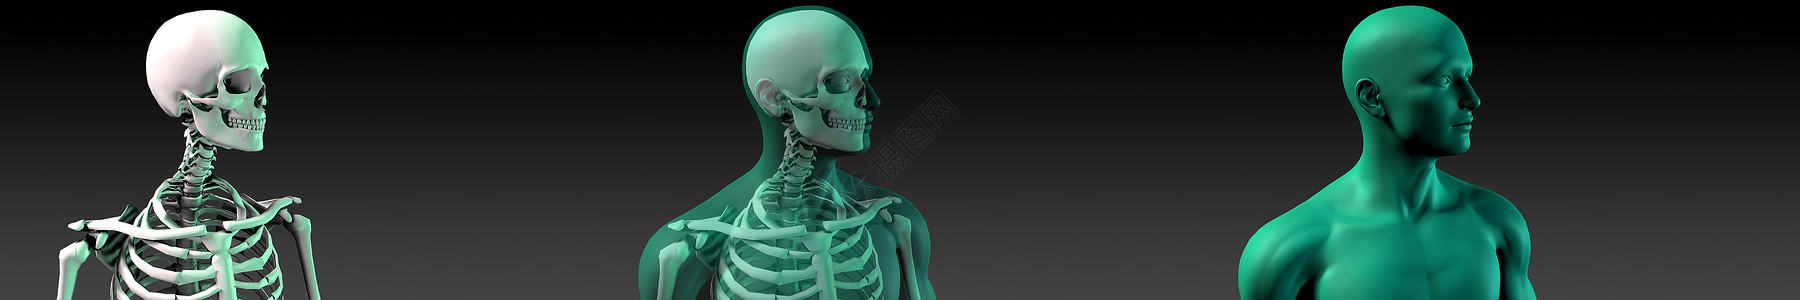 骨骼海报人体骨骼结构图蓝色科学身体墙纸风湿解剖学关节疾病手术疼痛背景